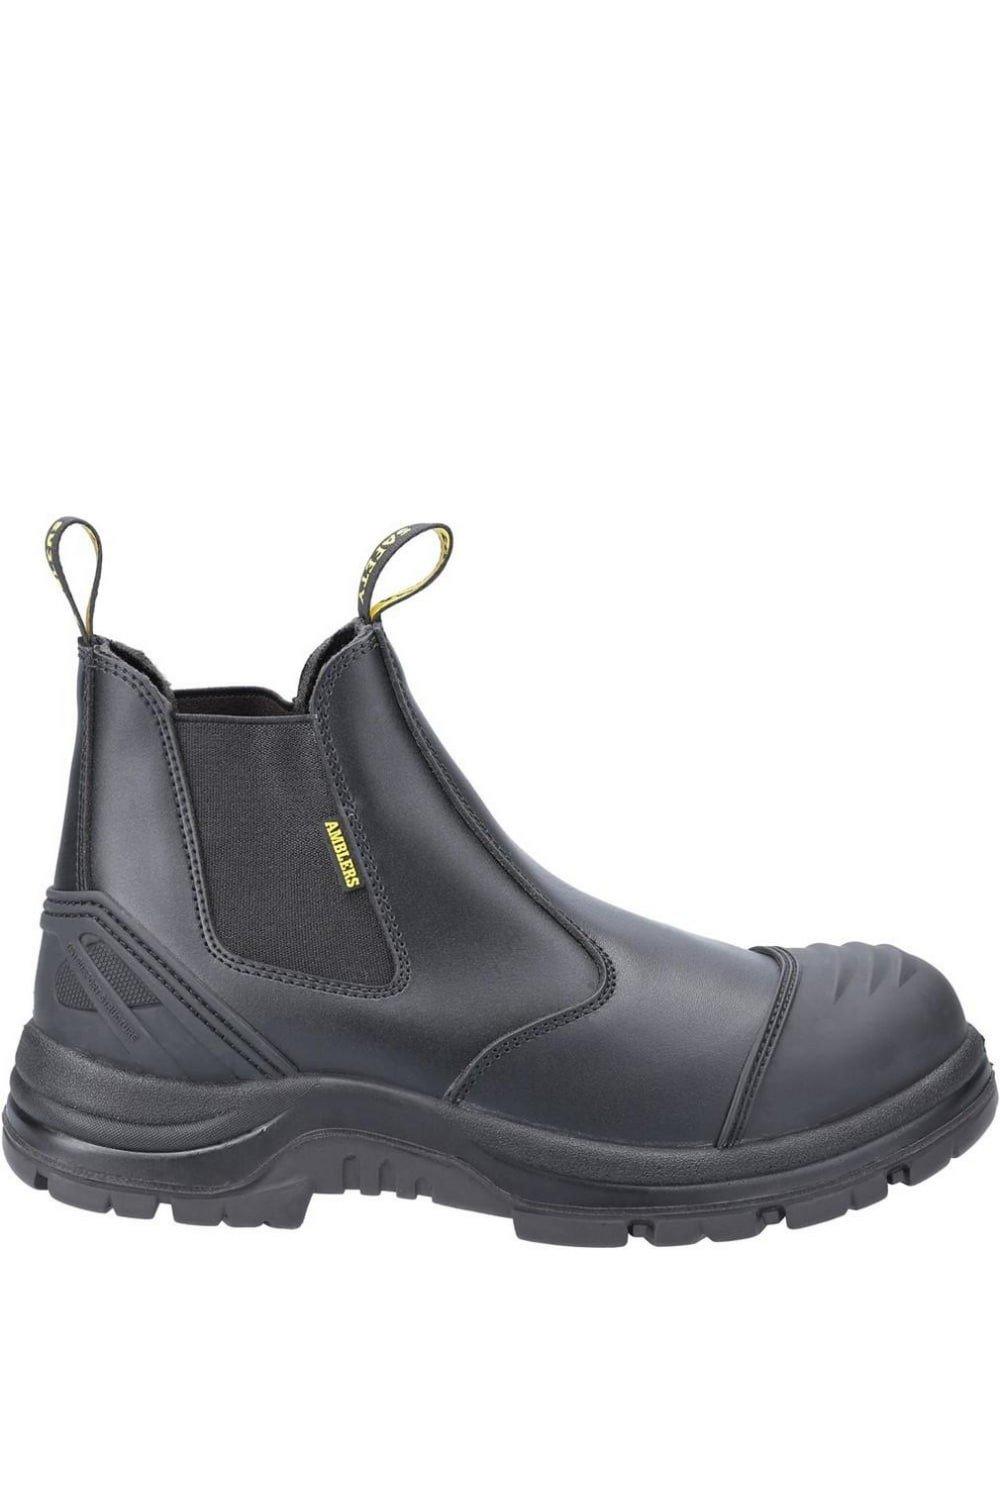 Кожаные защитные ботинки AS306C для дилеров Amblers, черный каталог дилеров